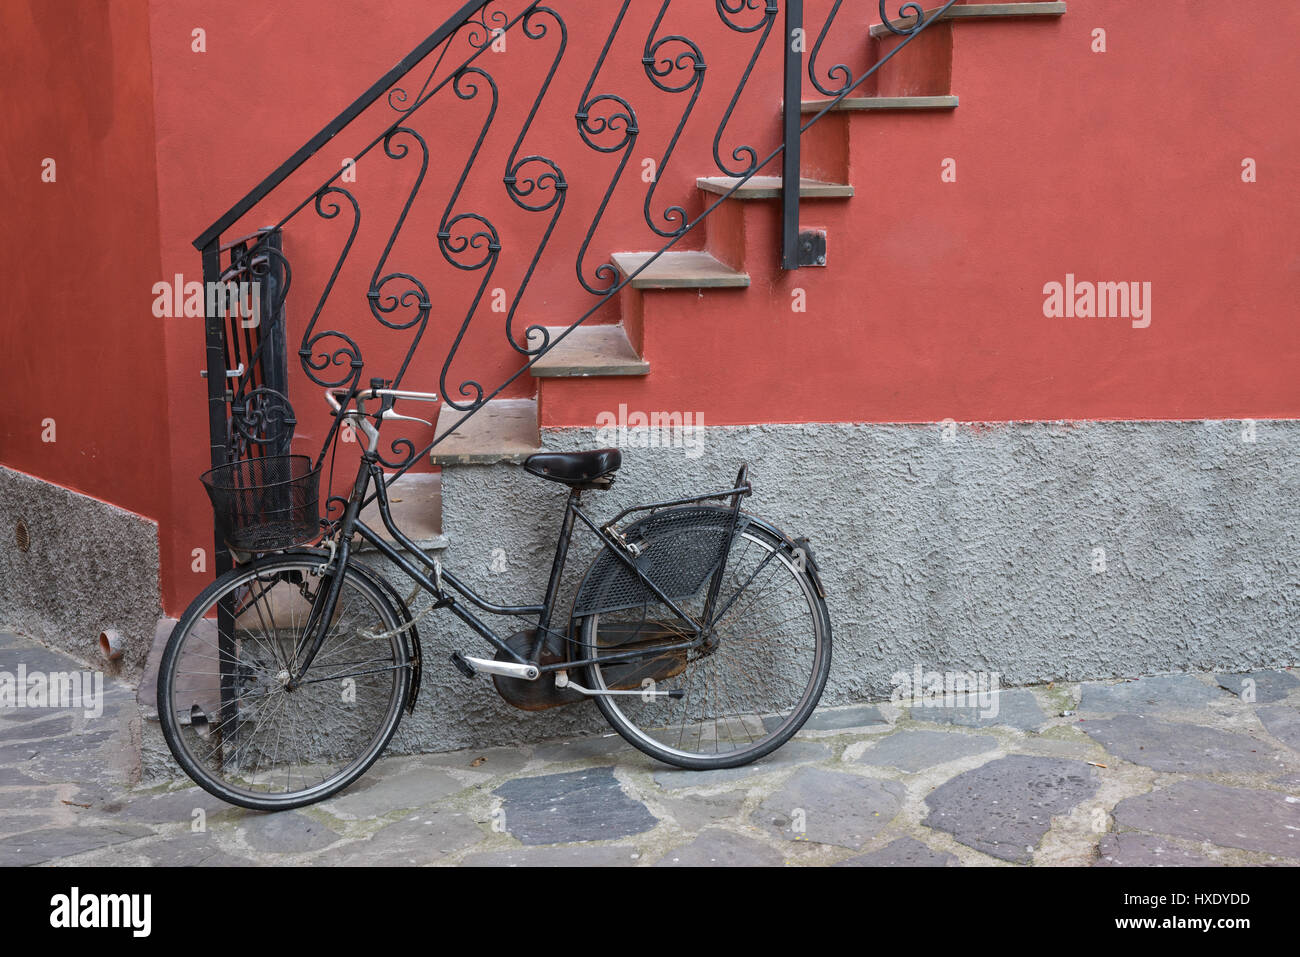 Moto garée près de l'escalier menant à la maison à Monterosso, Italie Banque D'Images